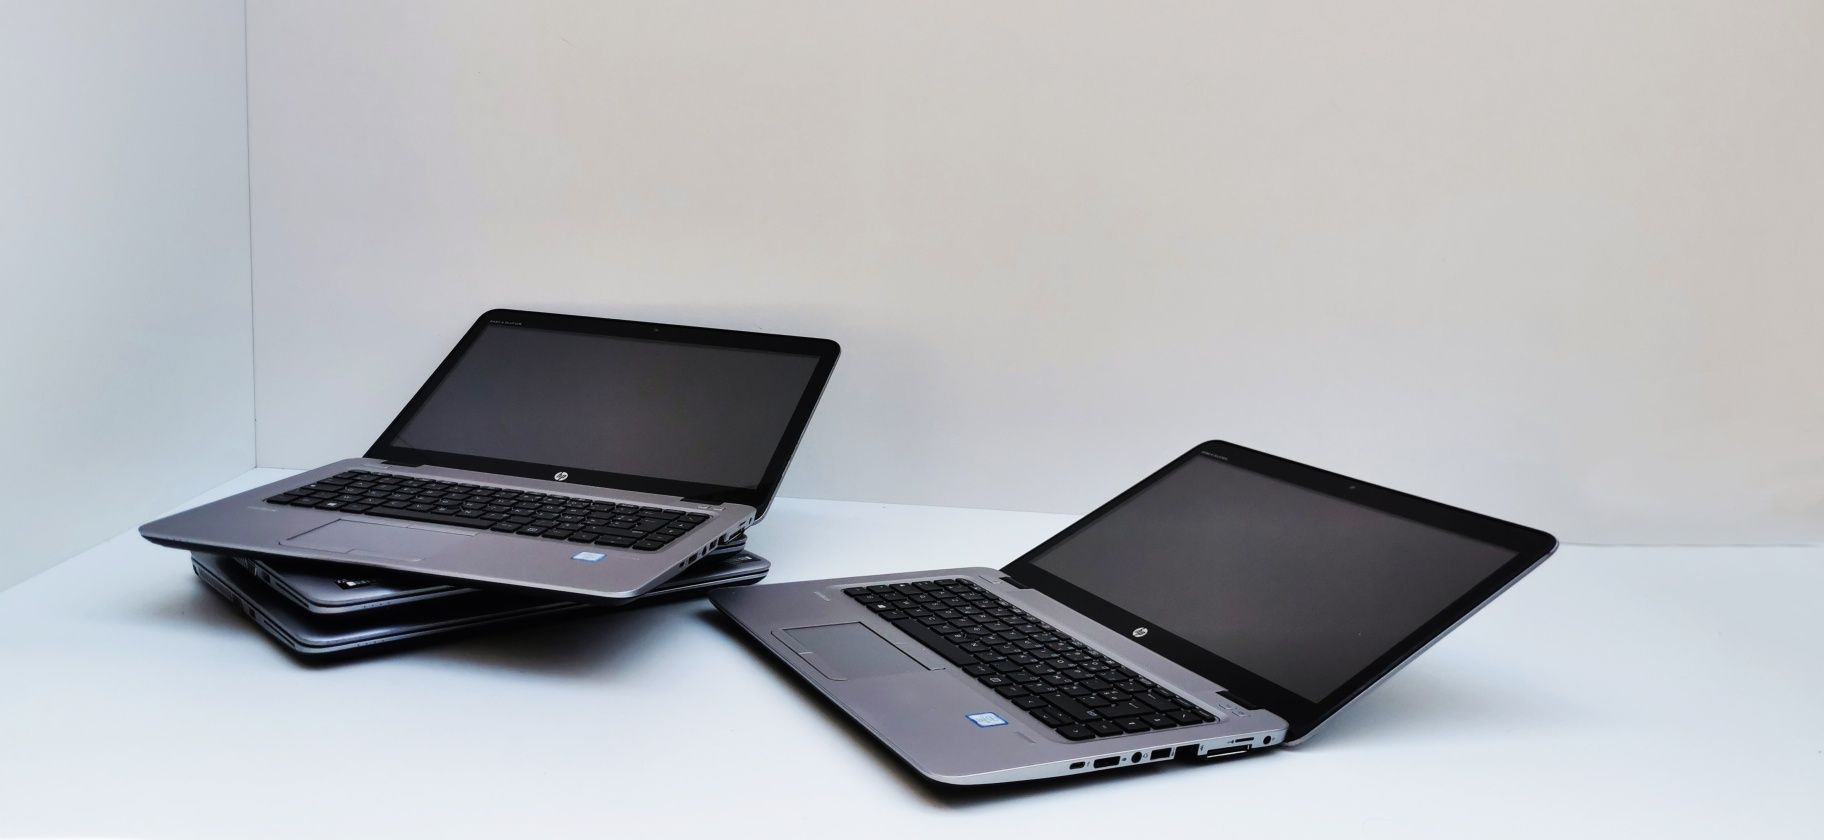 Laptopuri HP EliteBook 820 G3 i5 6200U 8 GB DDR4 256 GB SSD Intel HD